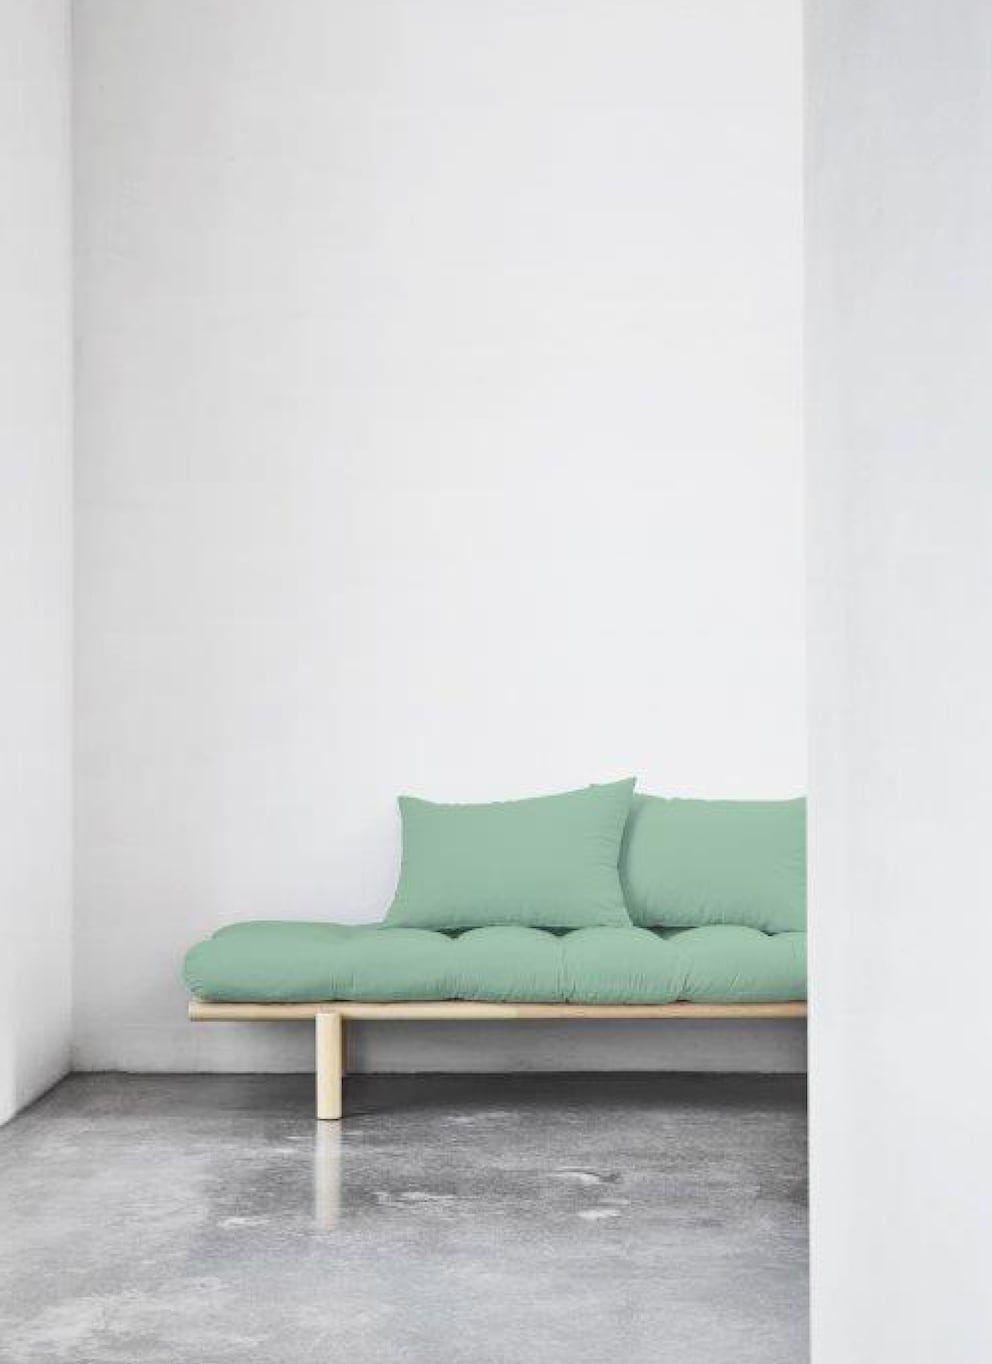 Multifunktionale Sofas nehmen wenig Raum und bieten Flexibilität. Bild: Karup